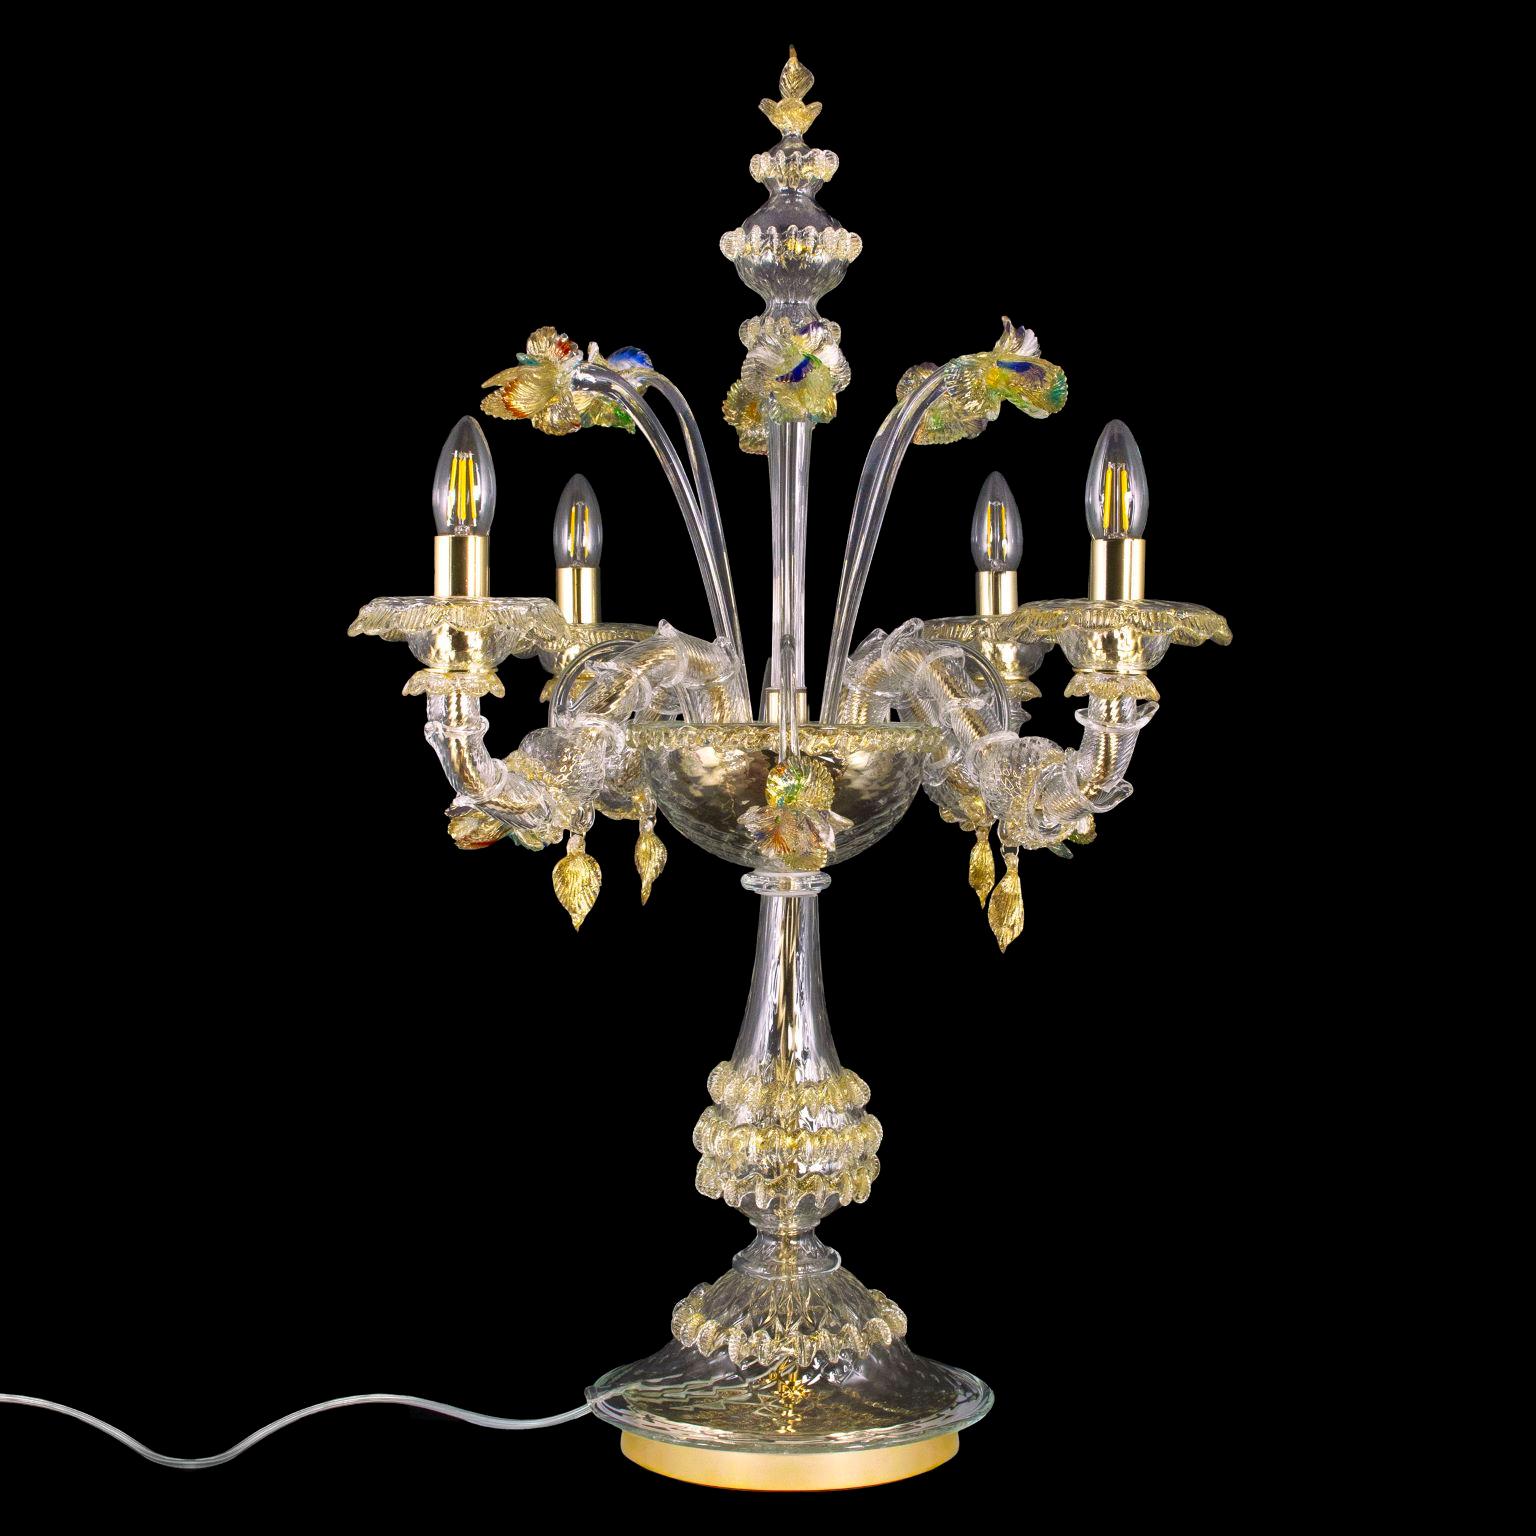 Luxueuse lampe Rezzonico flambeau 4 bras, verre de Murano transparent et doré par Multiforme.
La lampe flambeau est une lampe de table très élégante et luxueuse, enrichie de fleurs. Les lumières sont en haut. 
Convient pour éclairer chaque espace et